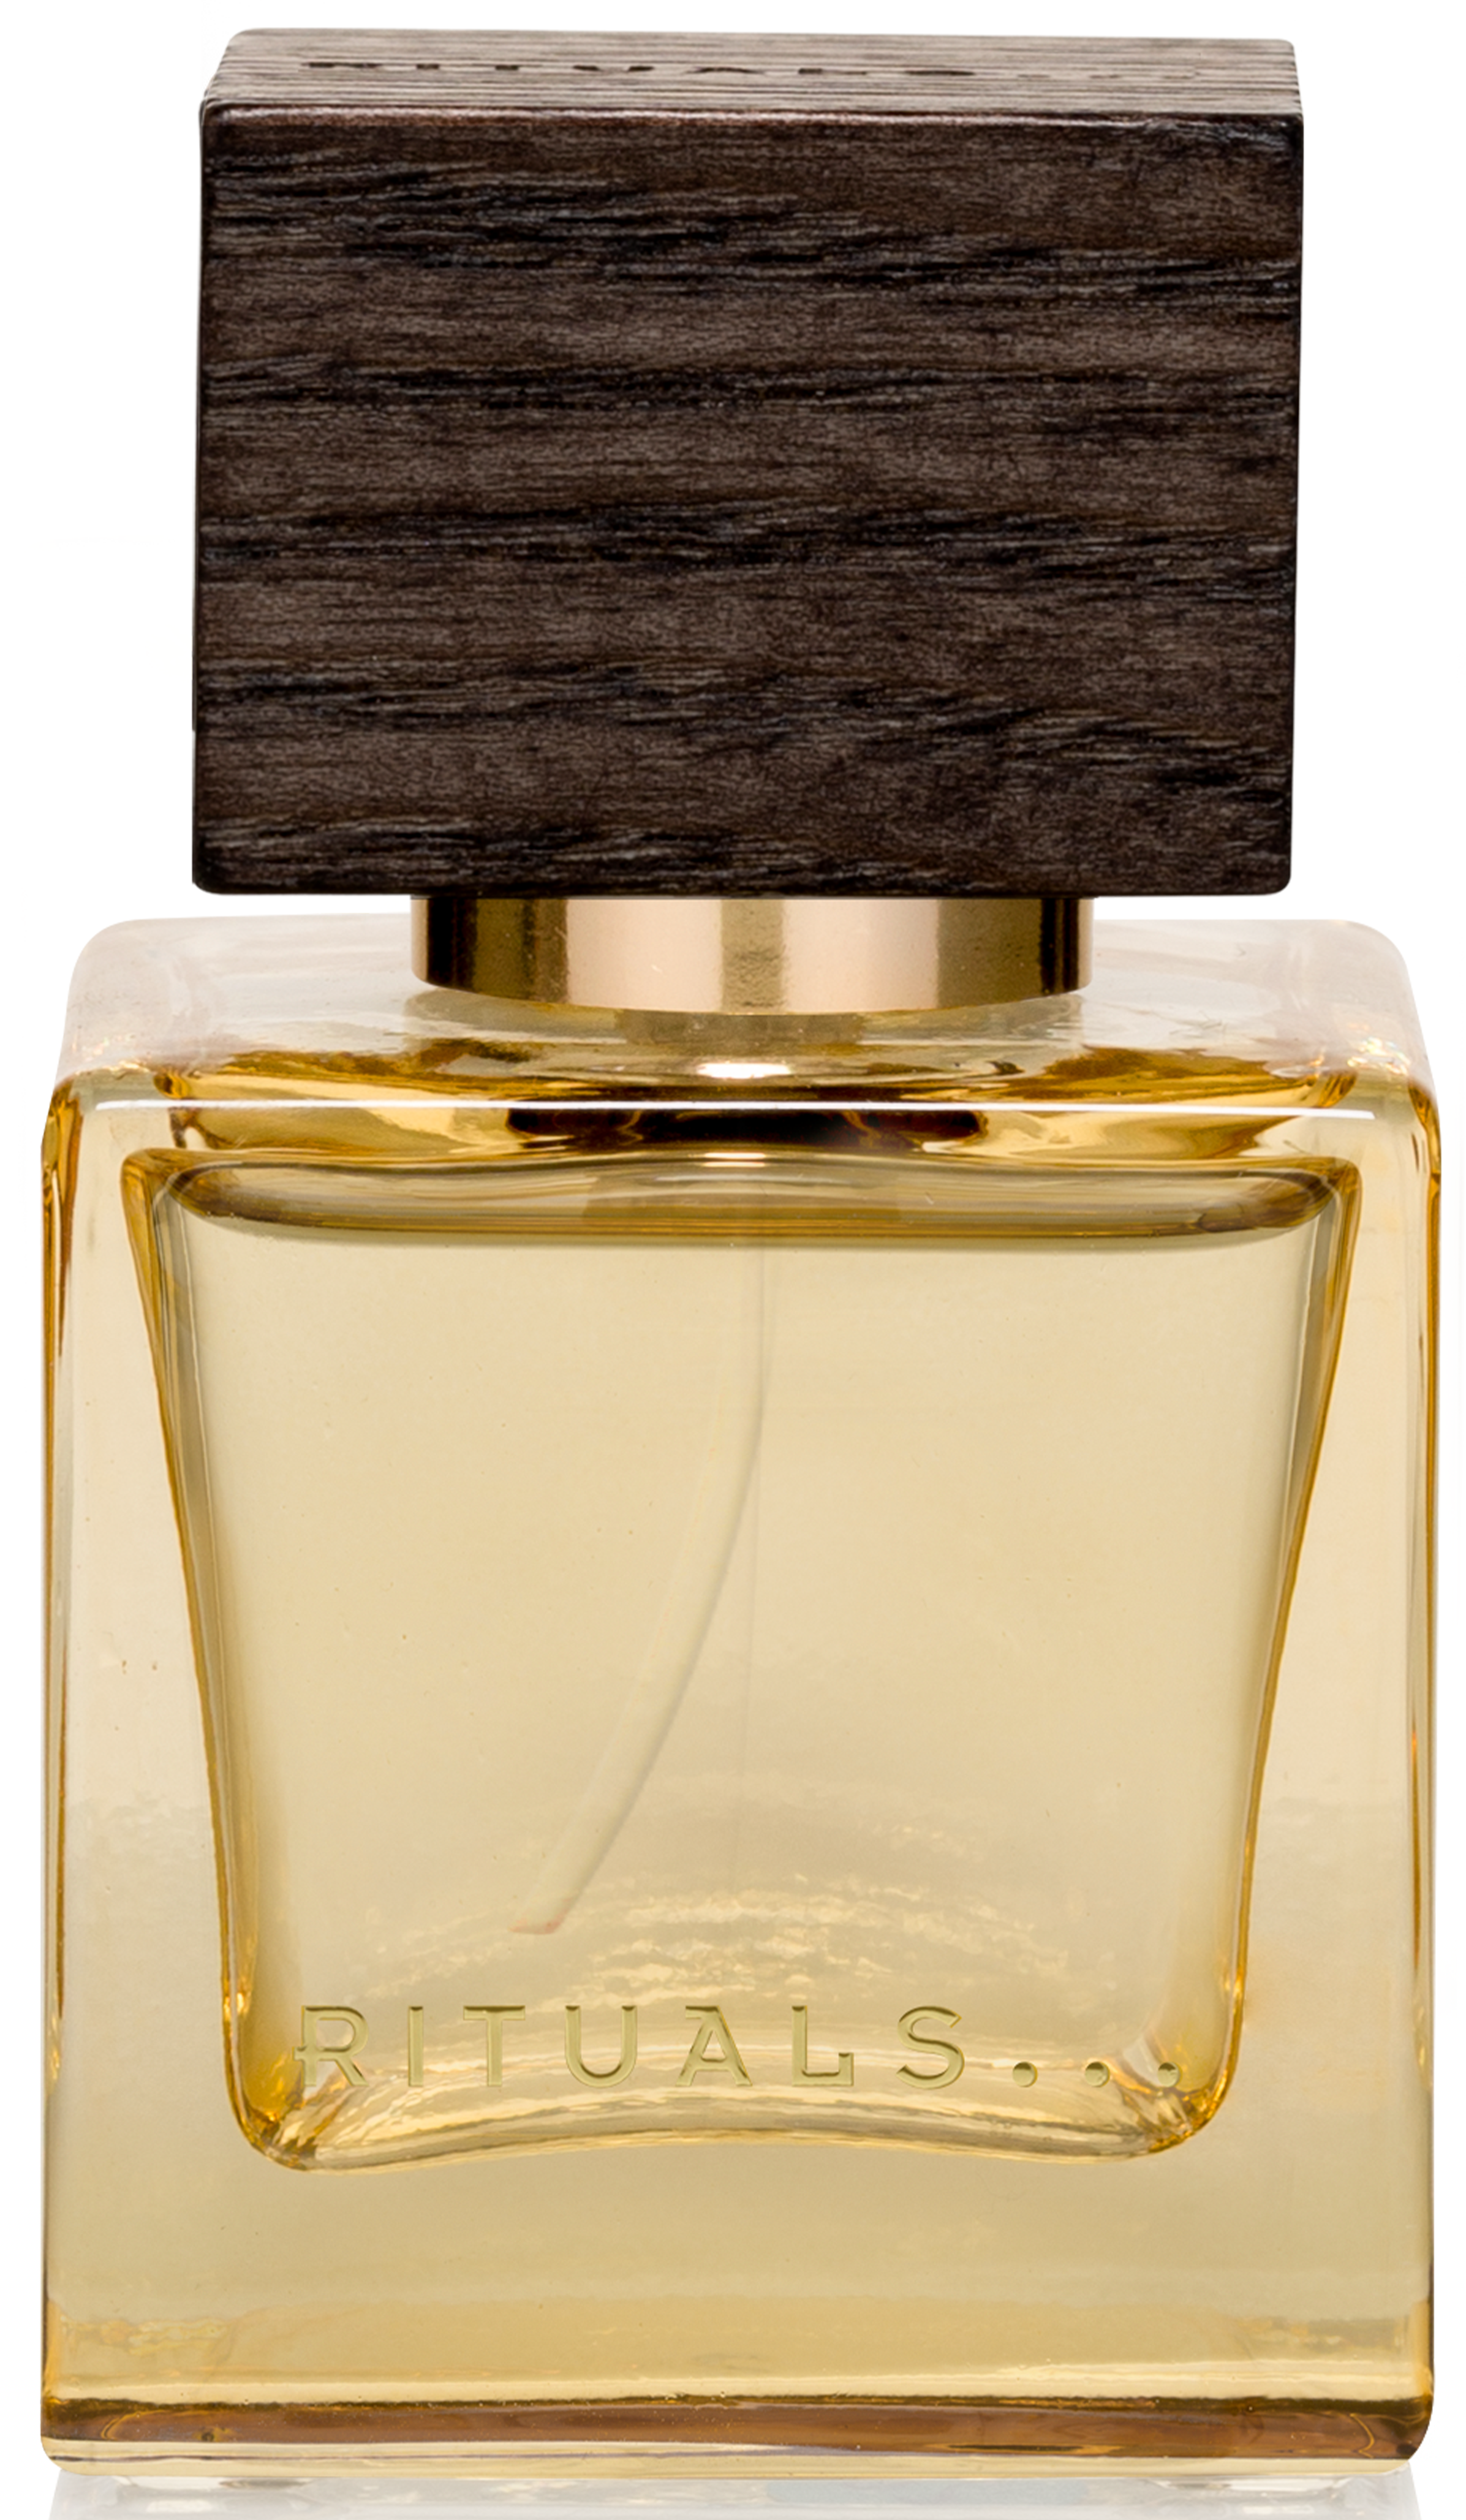 L&#039;Essence Rituals Parfum - ein es Parfum für Frauen und